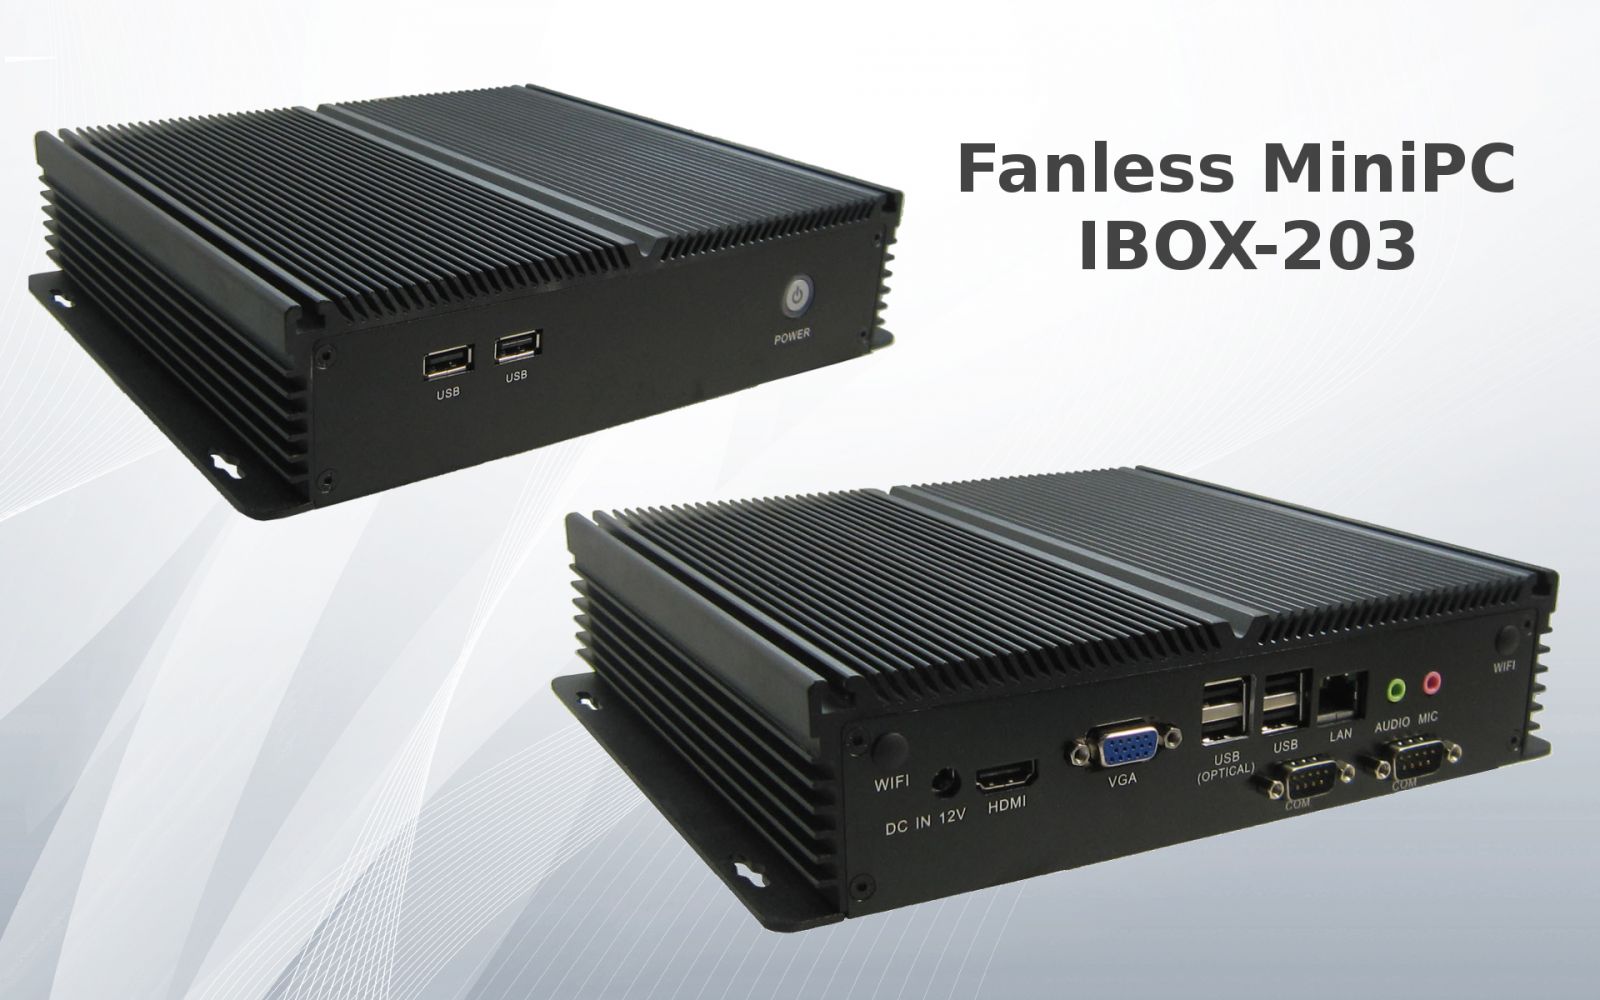 Industrial Computer Fanless MiniPC IBOX-203